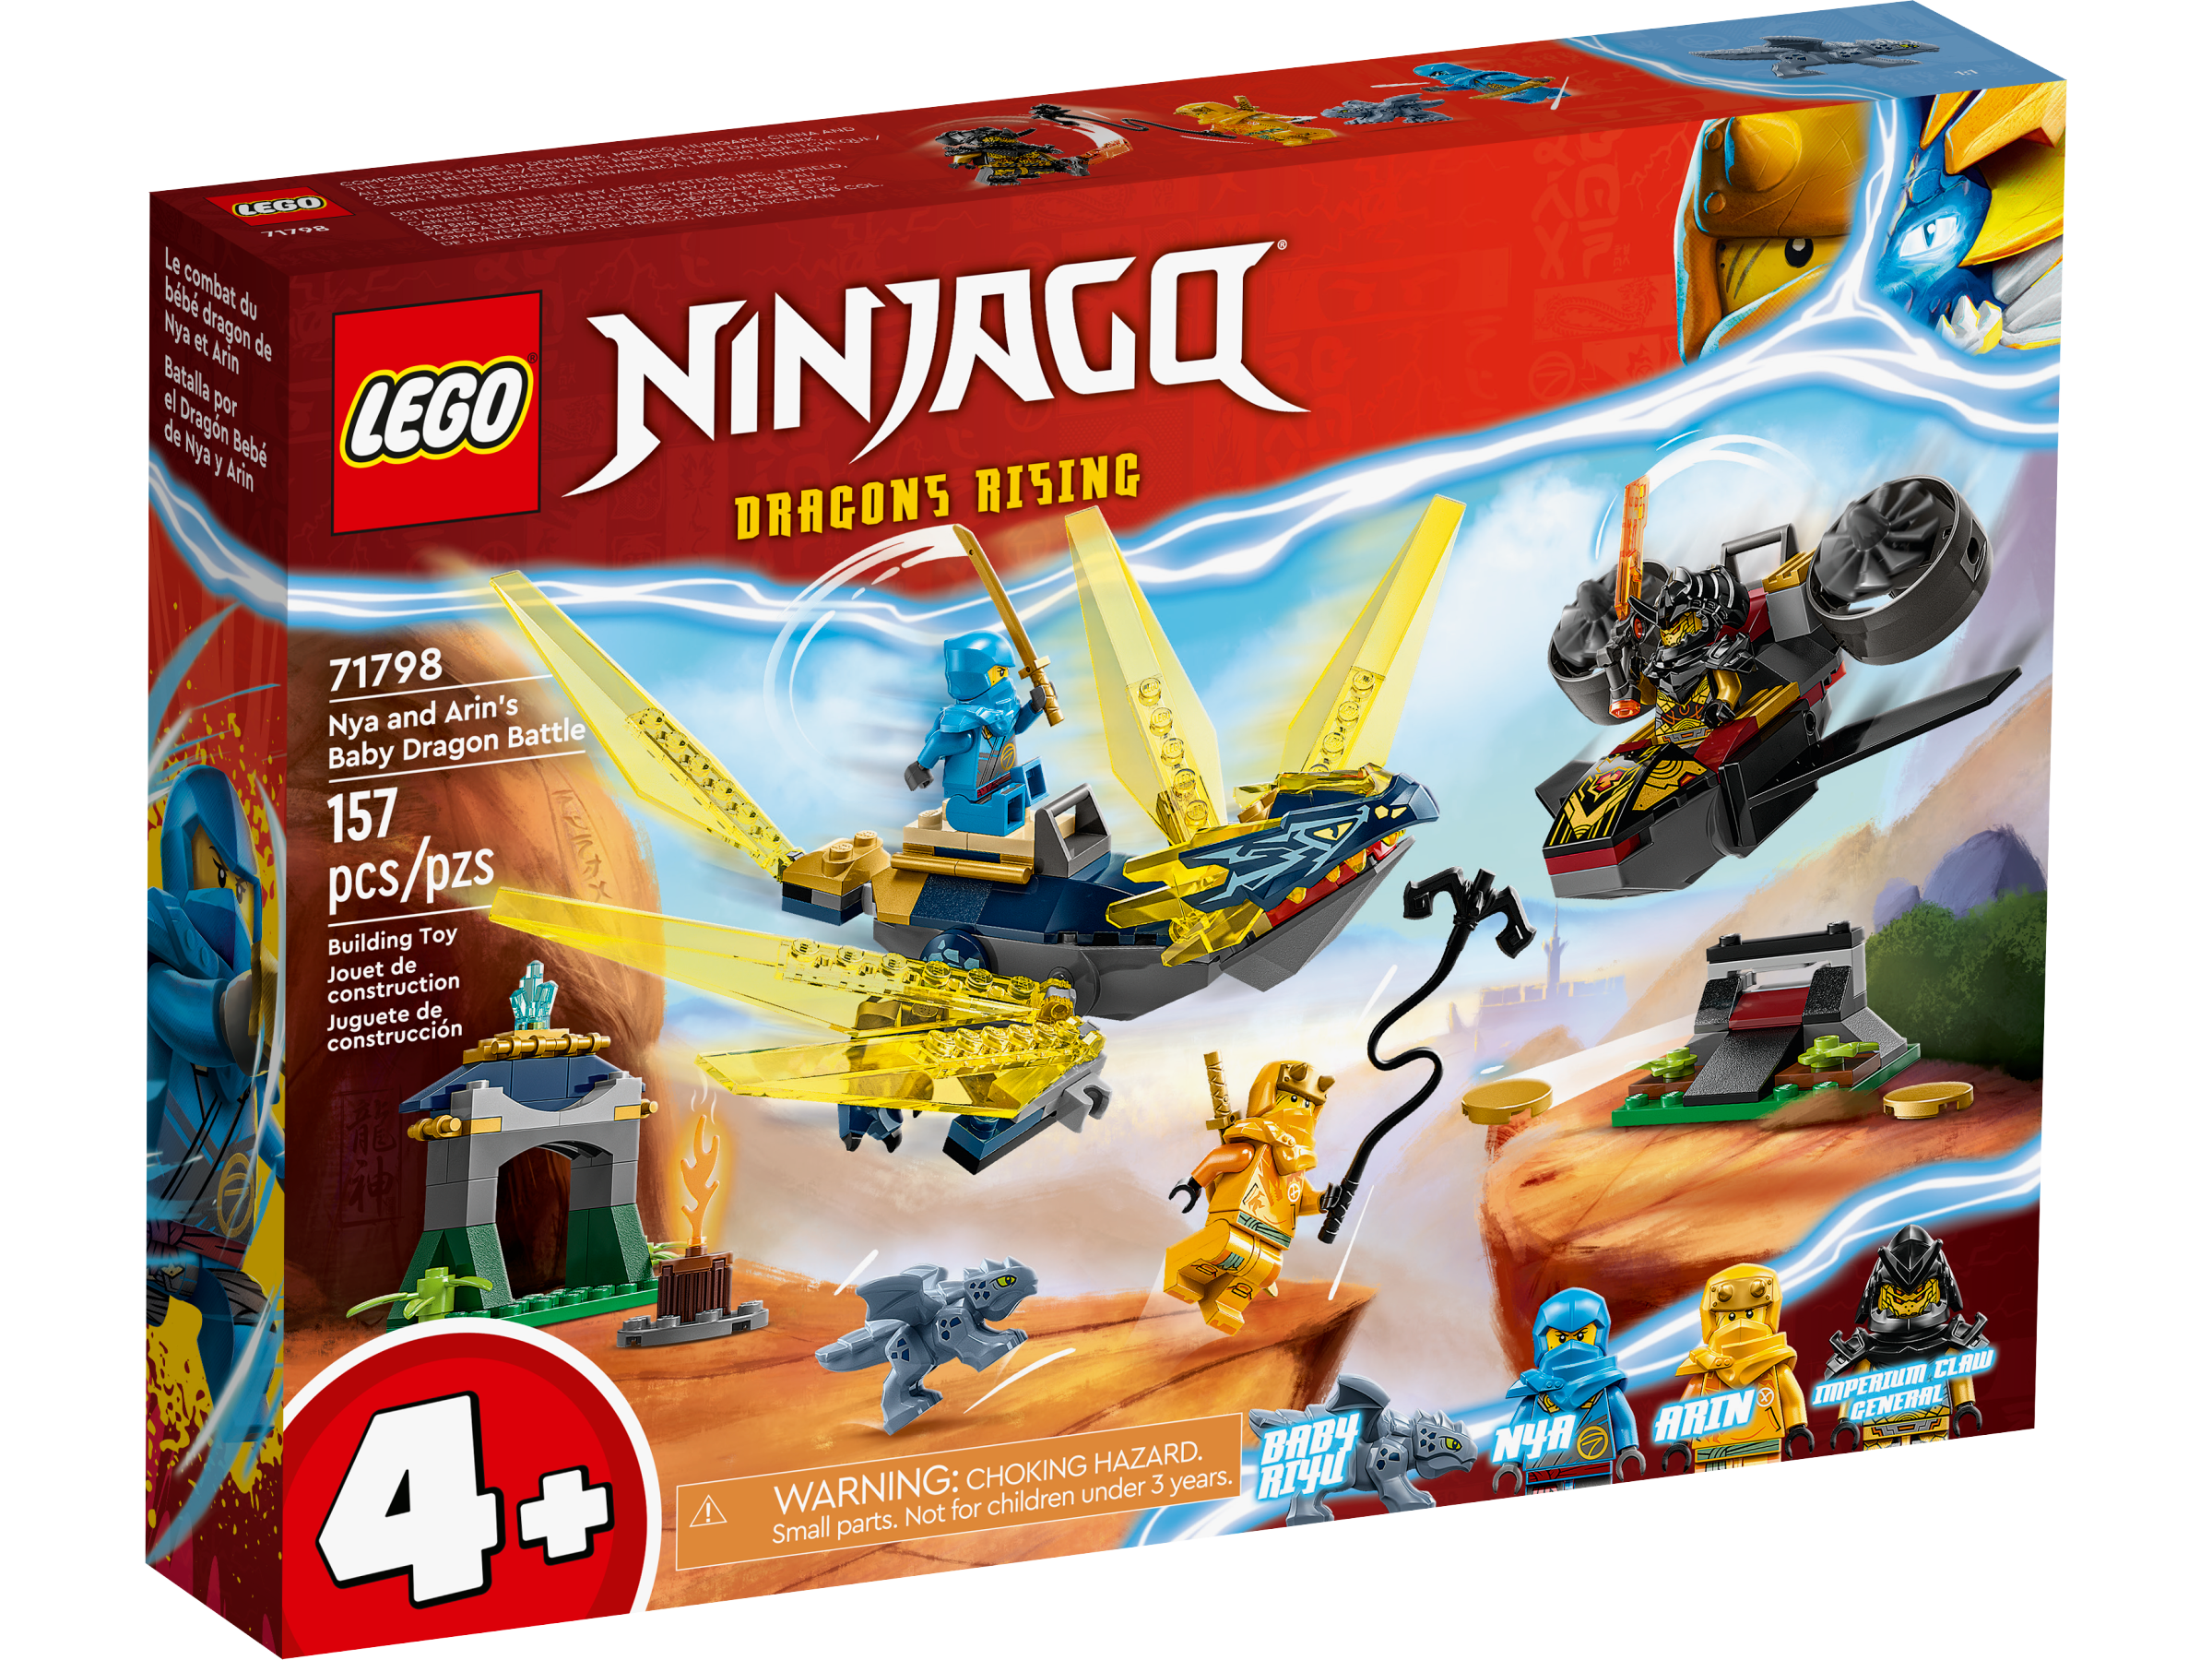 New NINJAGO® show is rising soon - LEGO® US